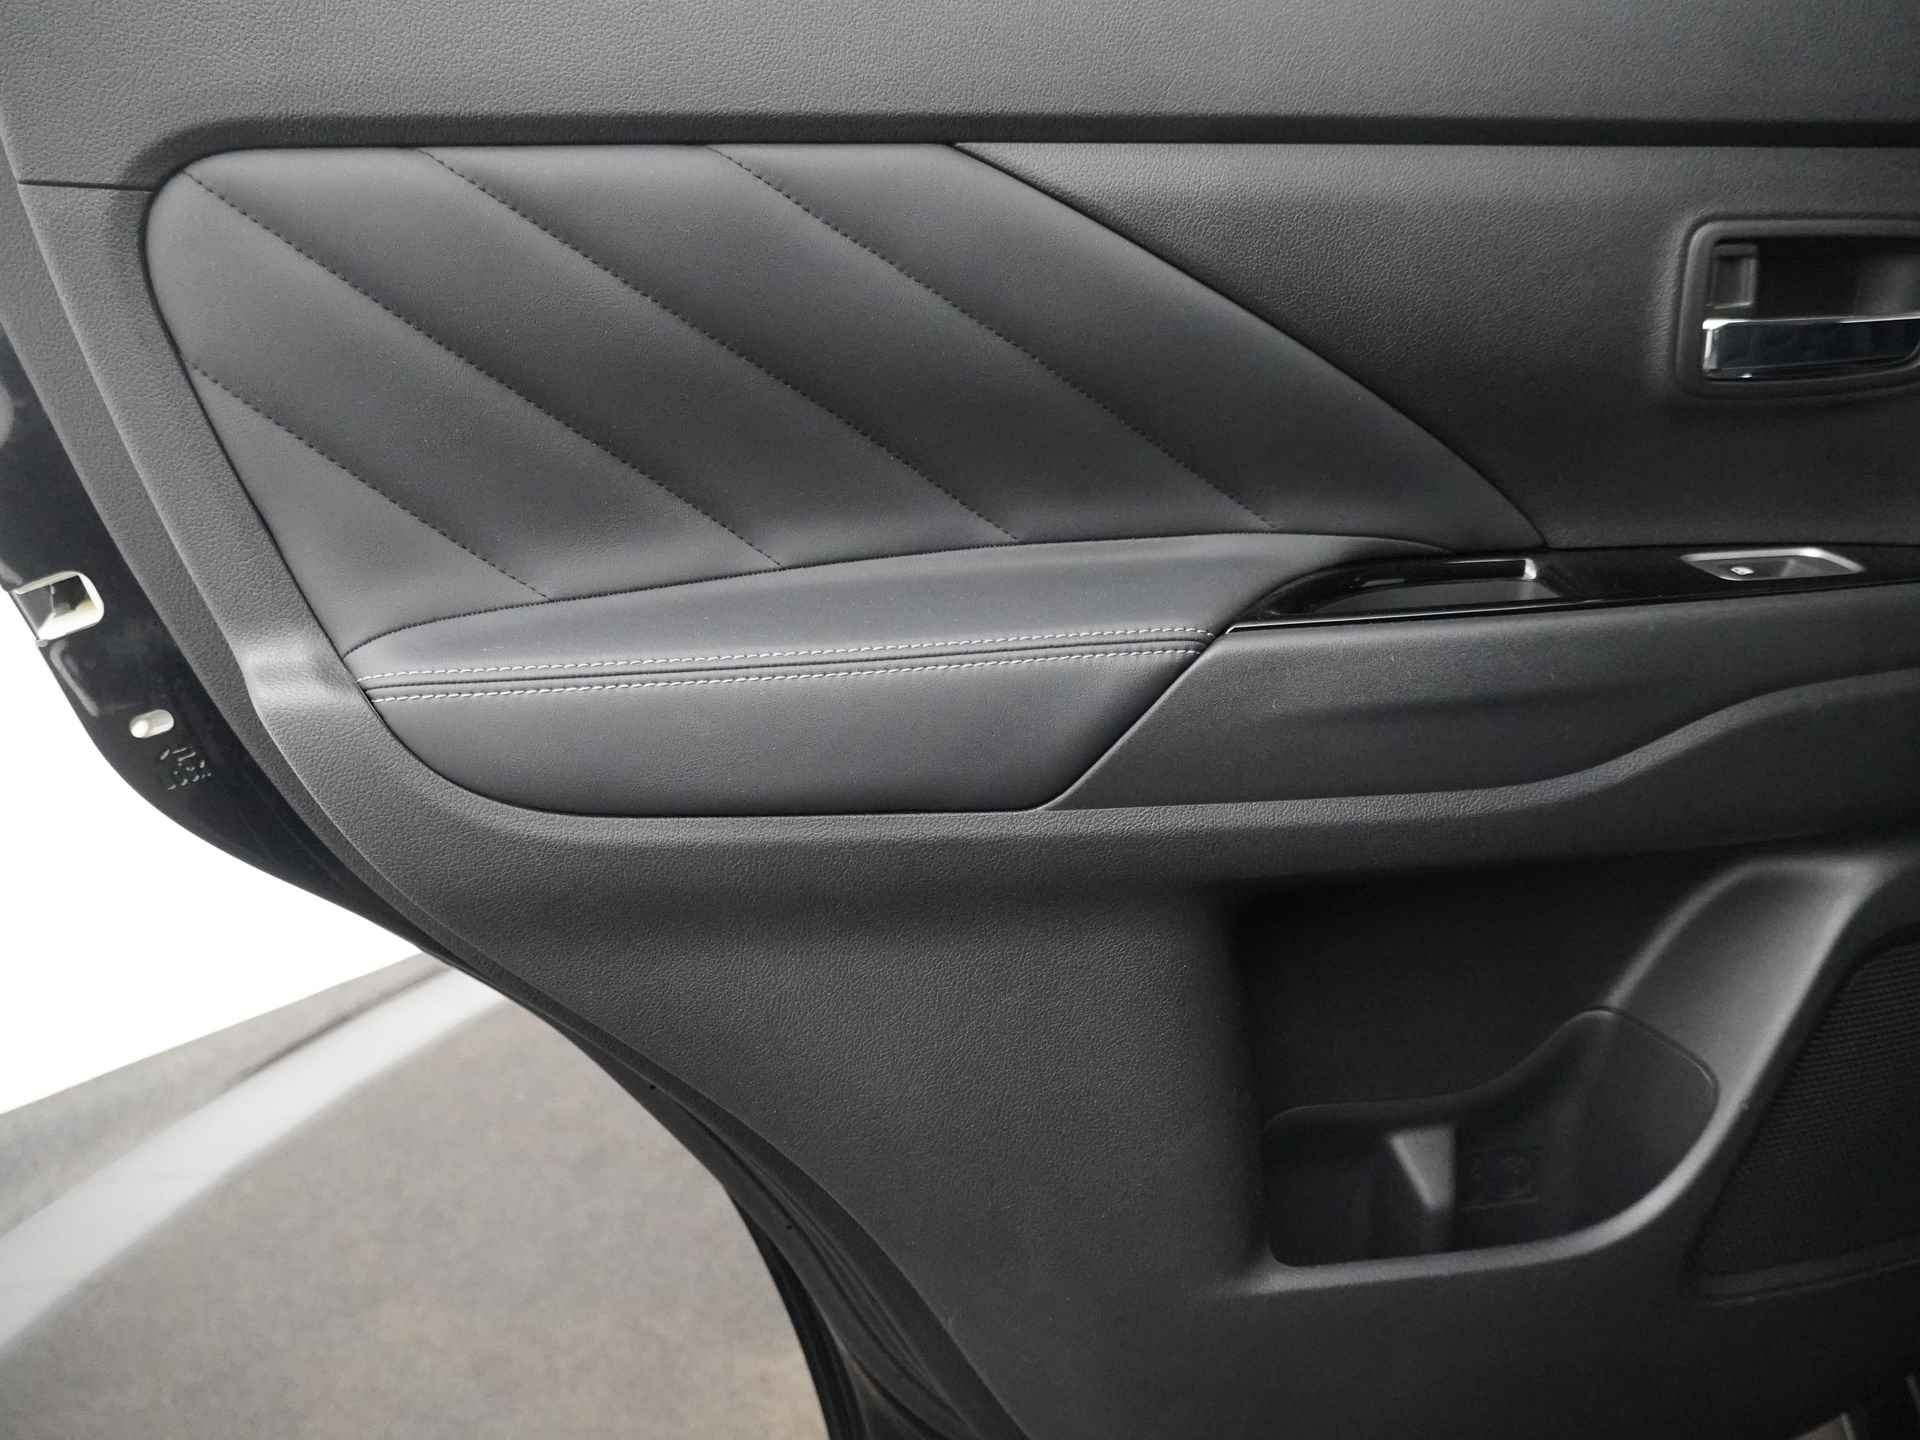 Mitsubishi Outlander 2.0 Instyle+ 4WD - Schuifkanteldak - Lederen bekleding - Voorraam verwarming - Apple CarPlay / Android Auto - Elektrische achterklep - 12 Maanden bovag garantie - 37/48